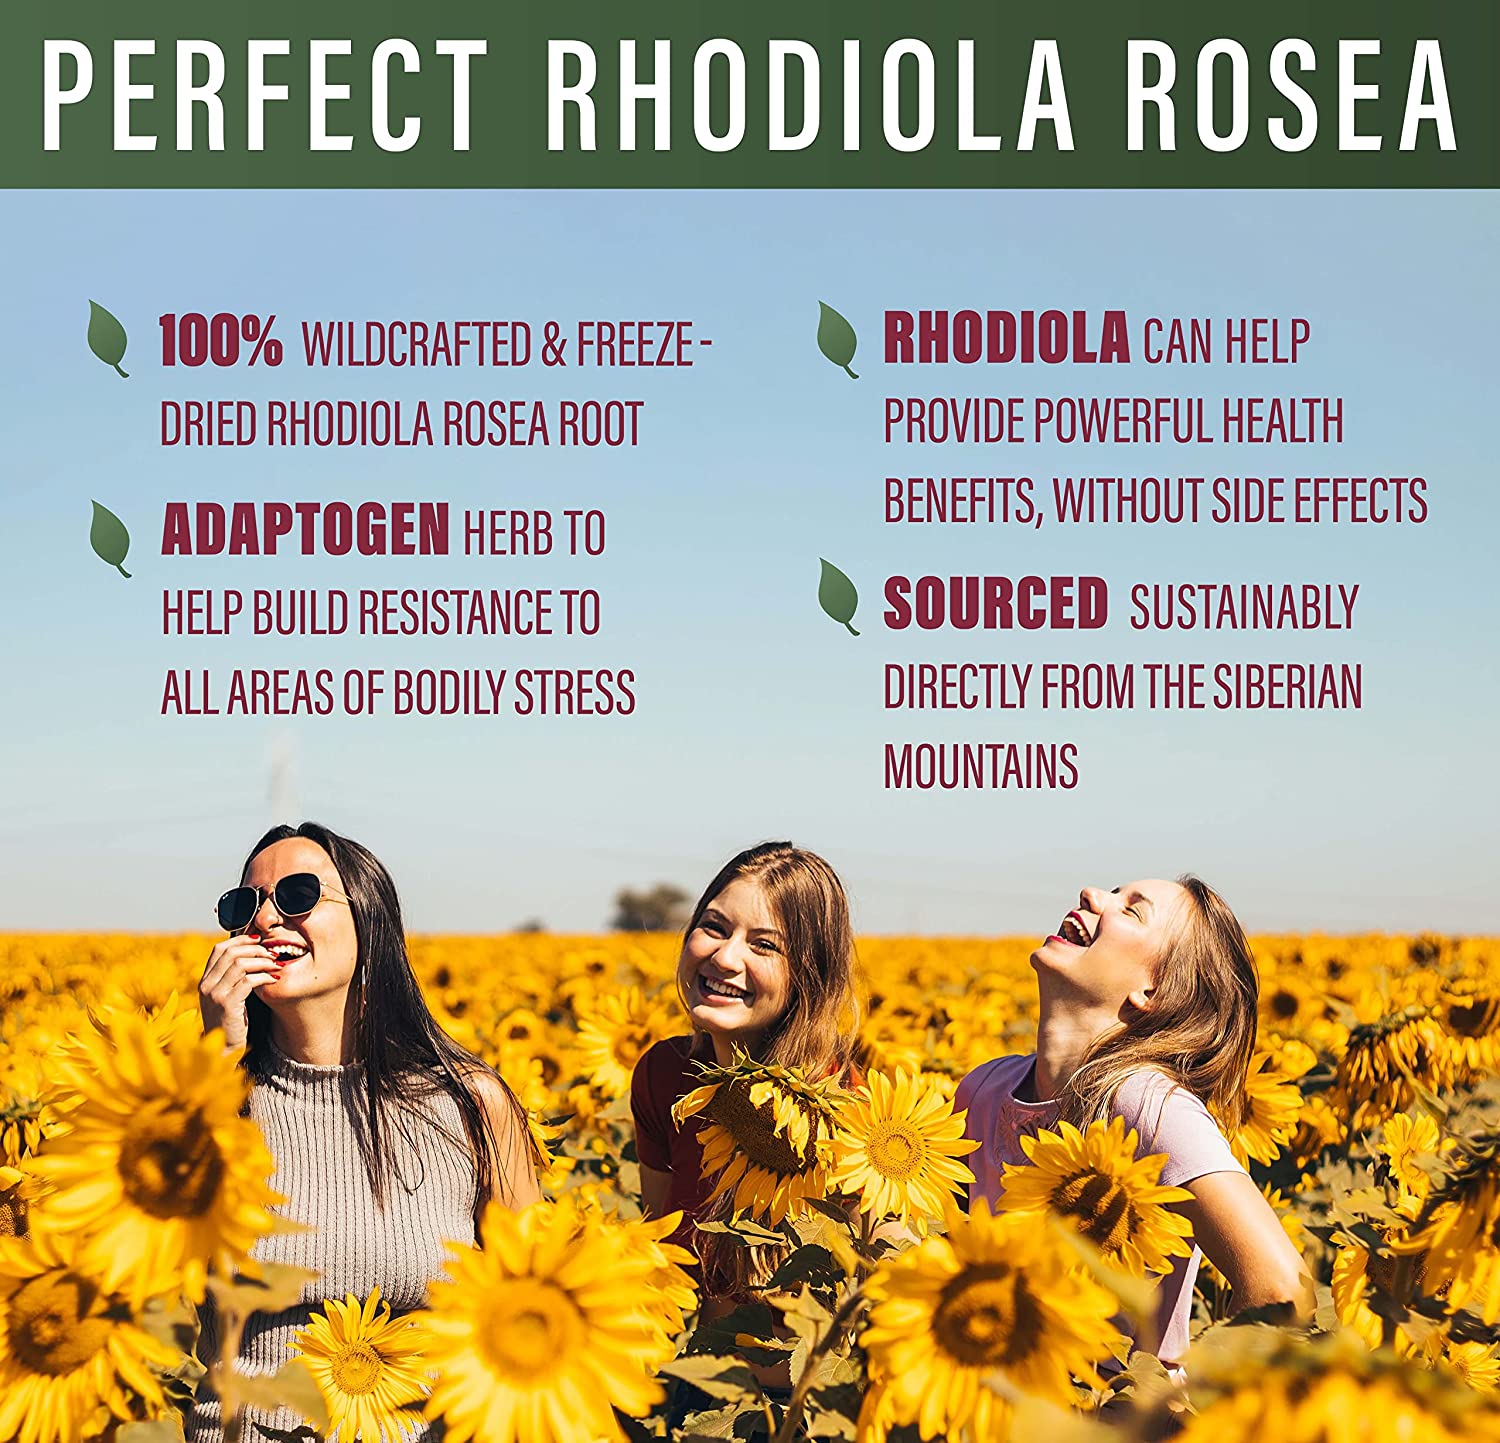 que es rhodiola rosea  rhodiola herb  rhodiola rosea root extract  rhodiola root extract  rhodiola rosea root  rhodiola rosea extract  rhodiola benefits  rhodiola root  rhodiola rosea  rhodiola extract